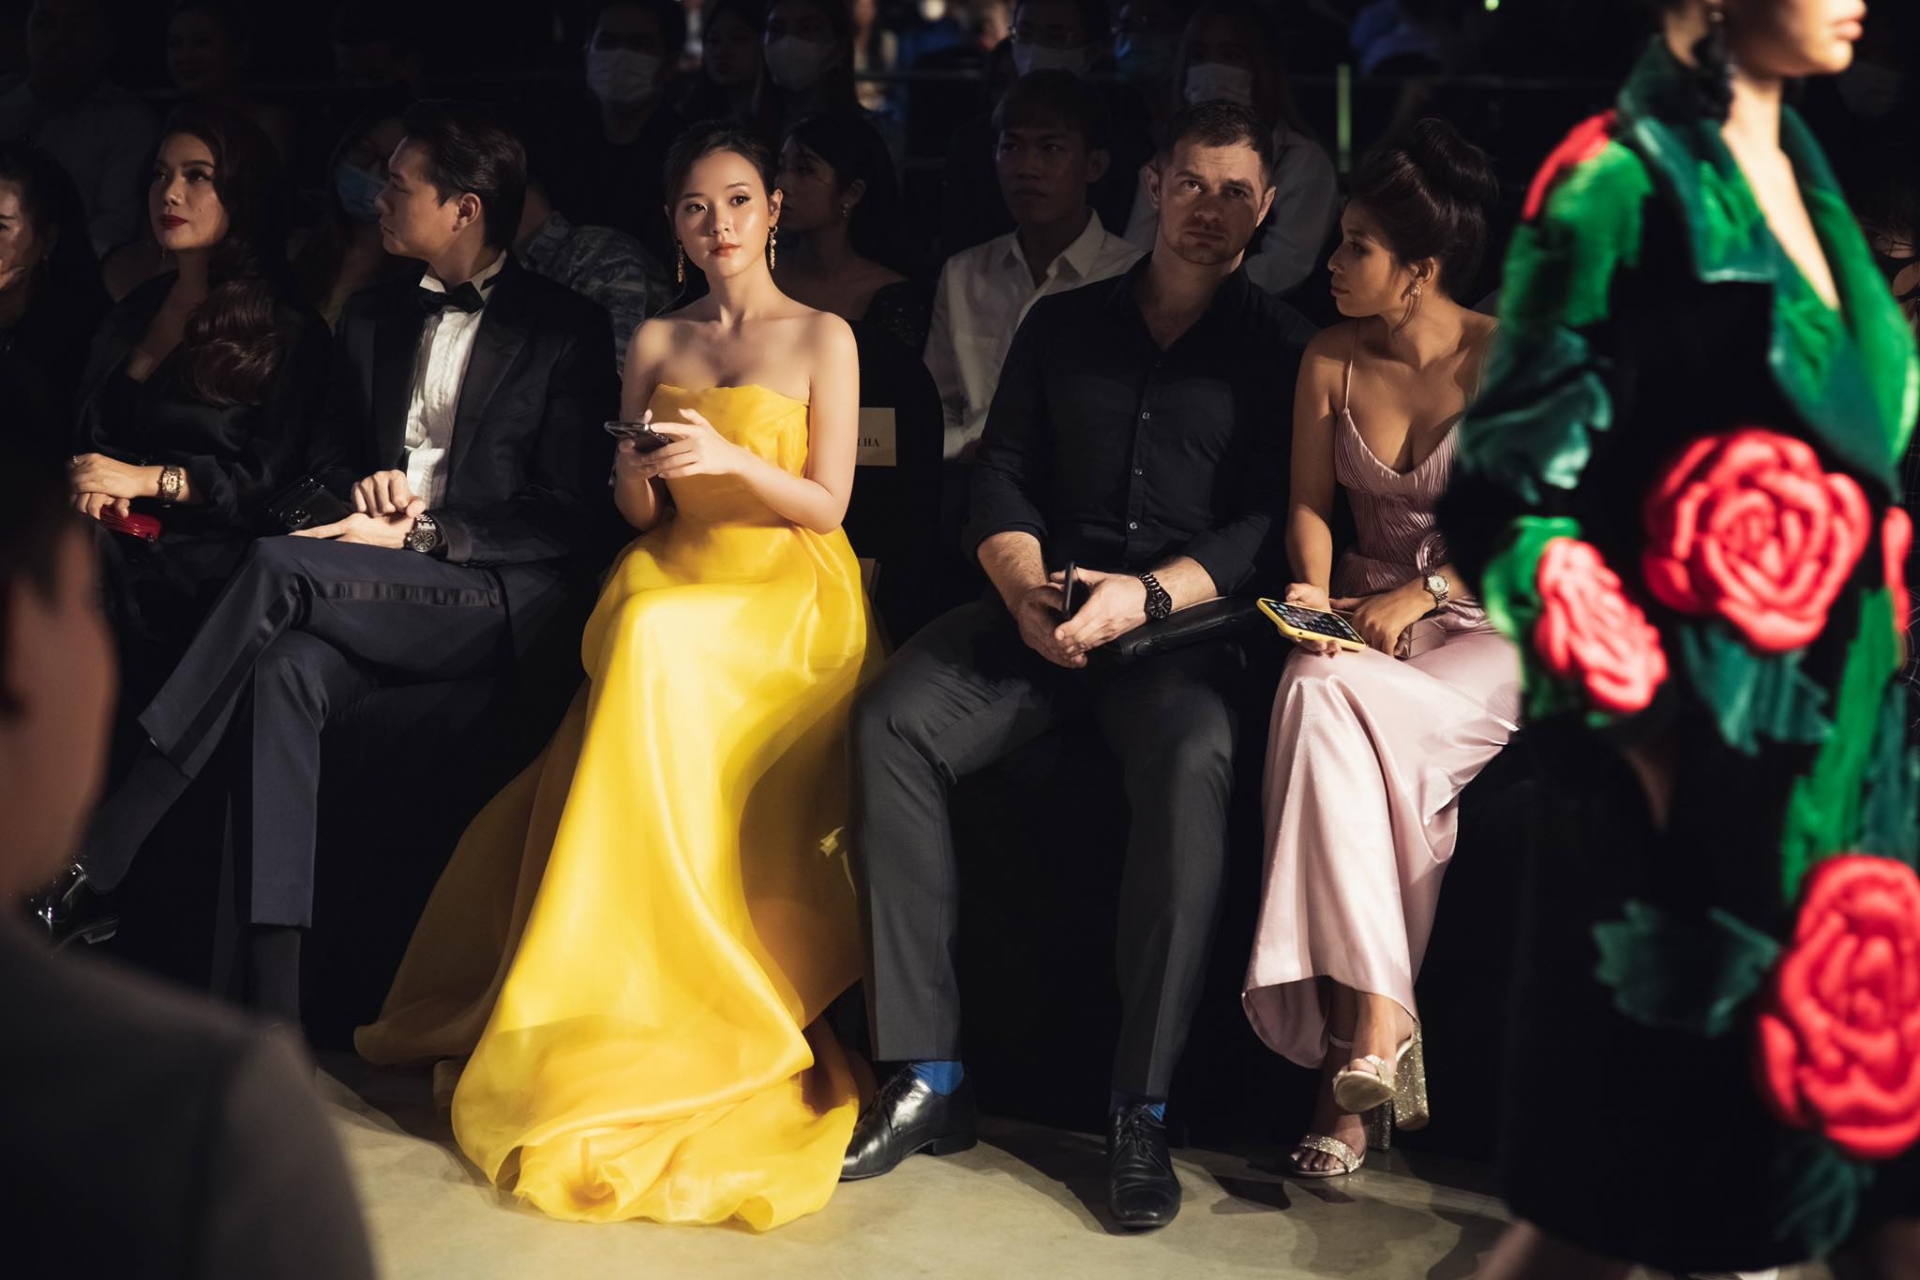 Mới đây, Midu đã góp mặt trong danh sách những ngôi sao mặc đẹp nhất của Vietnam International Fashion Festival với một thiết kế đầm vàng của NTK Minh Hà. Chiếc váy quây ôm sát, đẩy nhẹ vòng 1 của người đẹp.